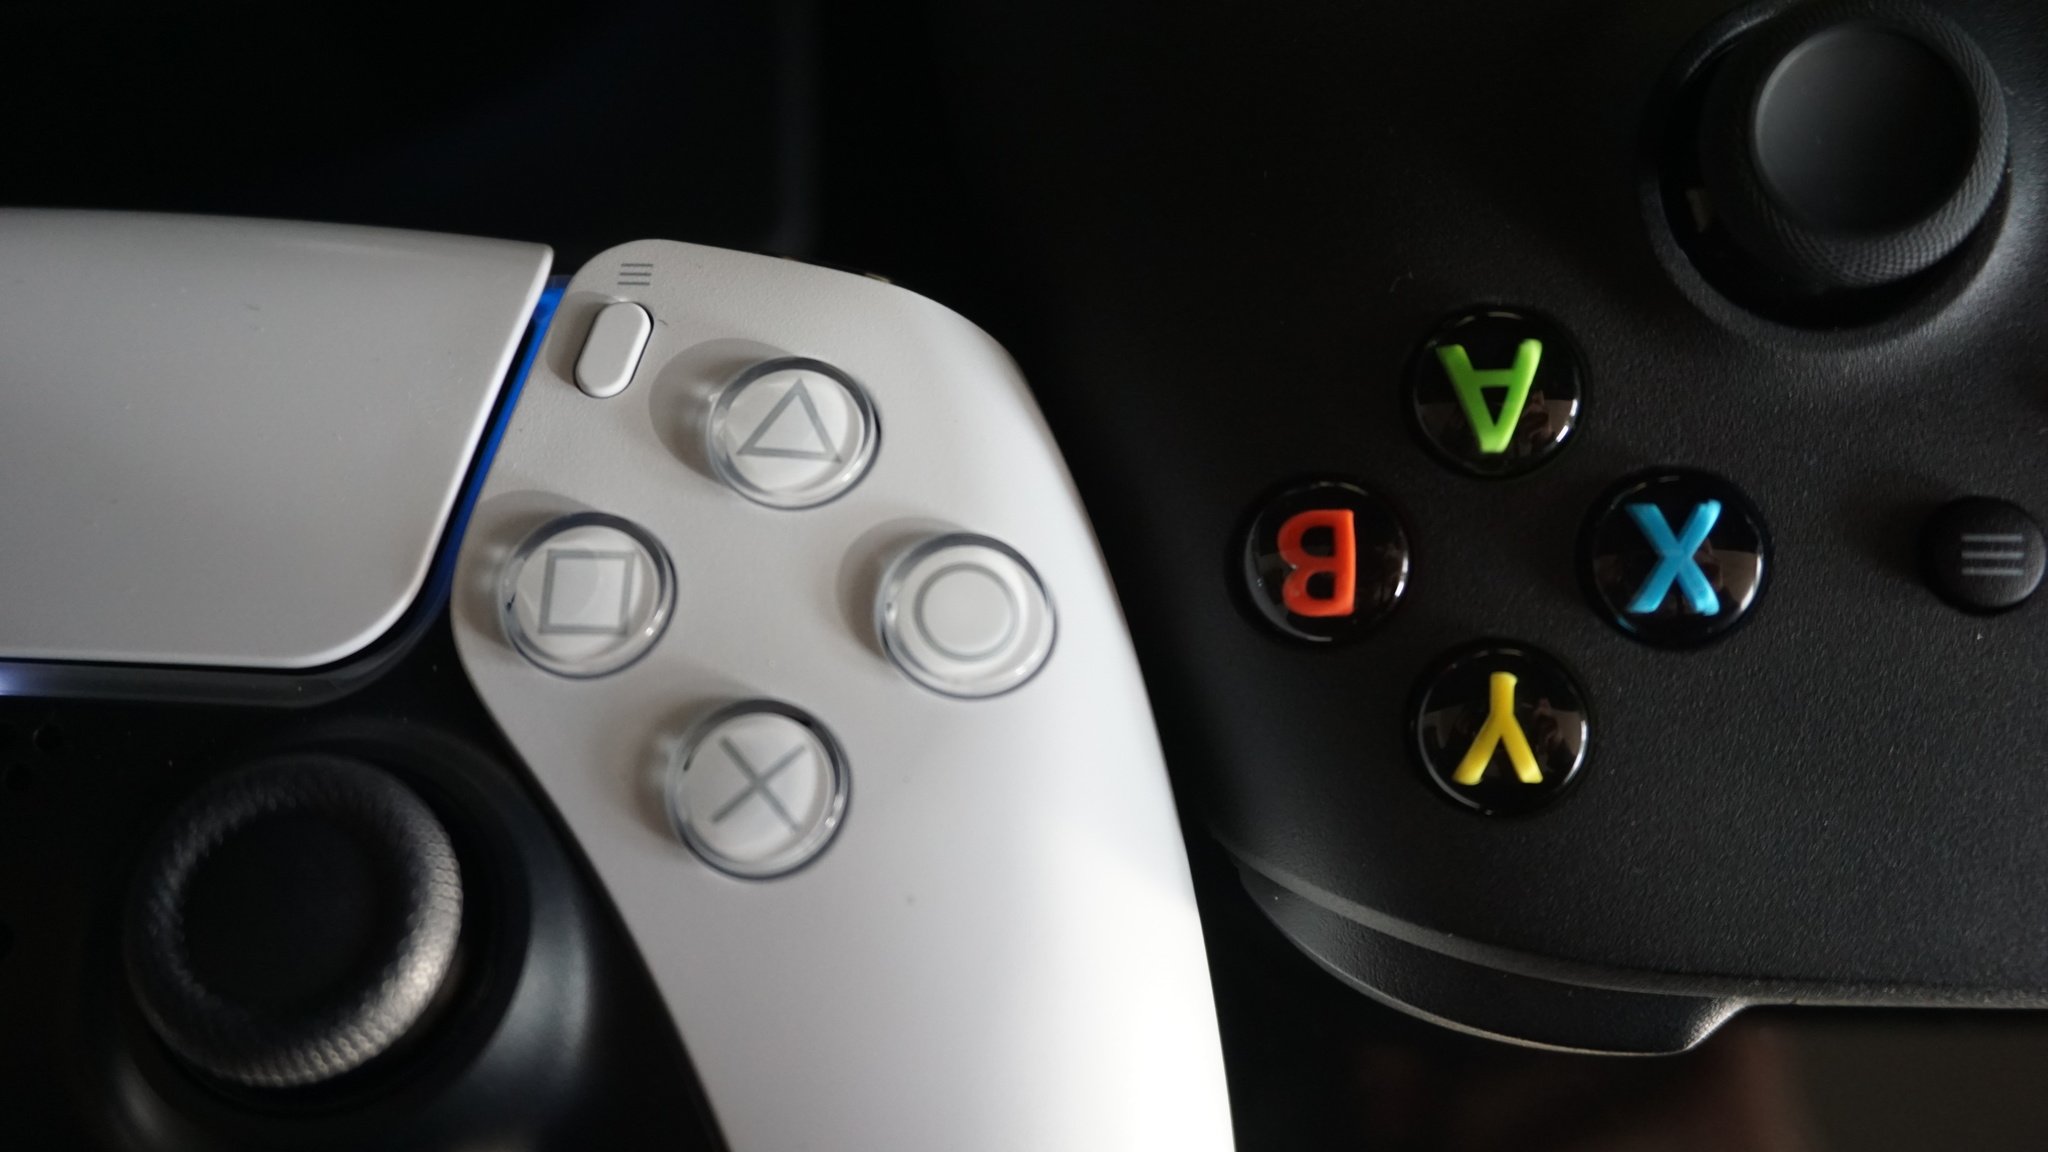 PS5 DualSense controller vs Xbox Series X controller: which